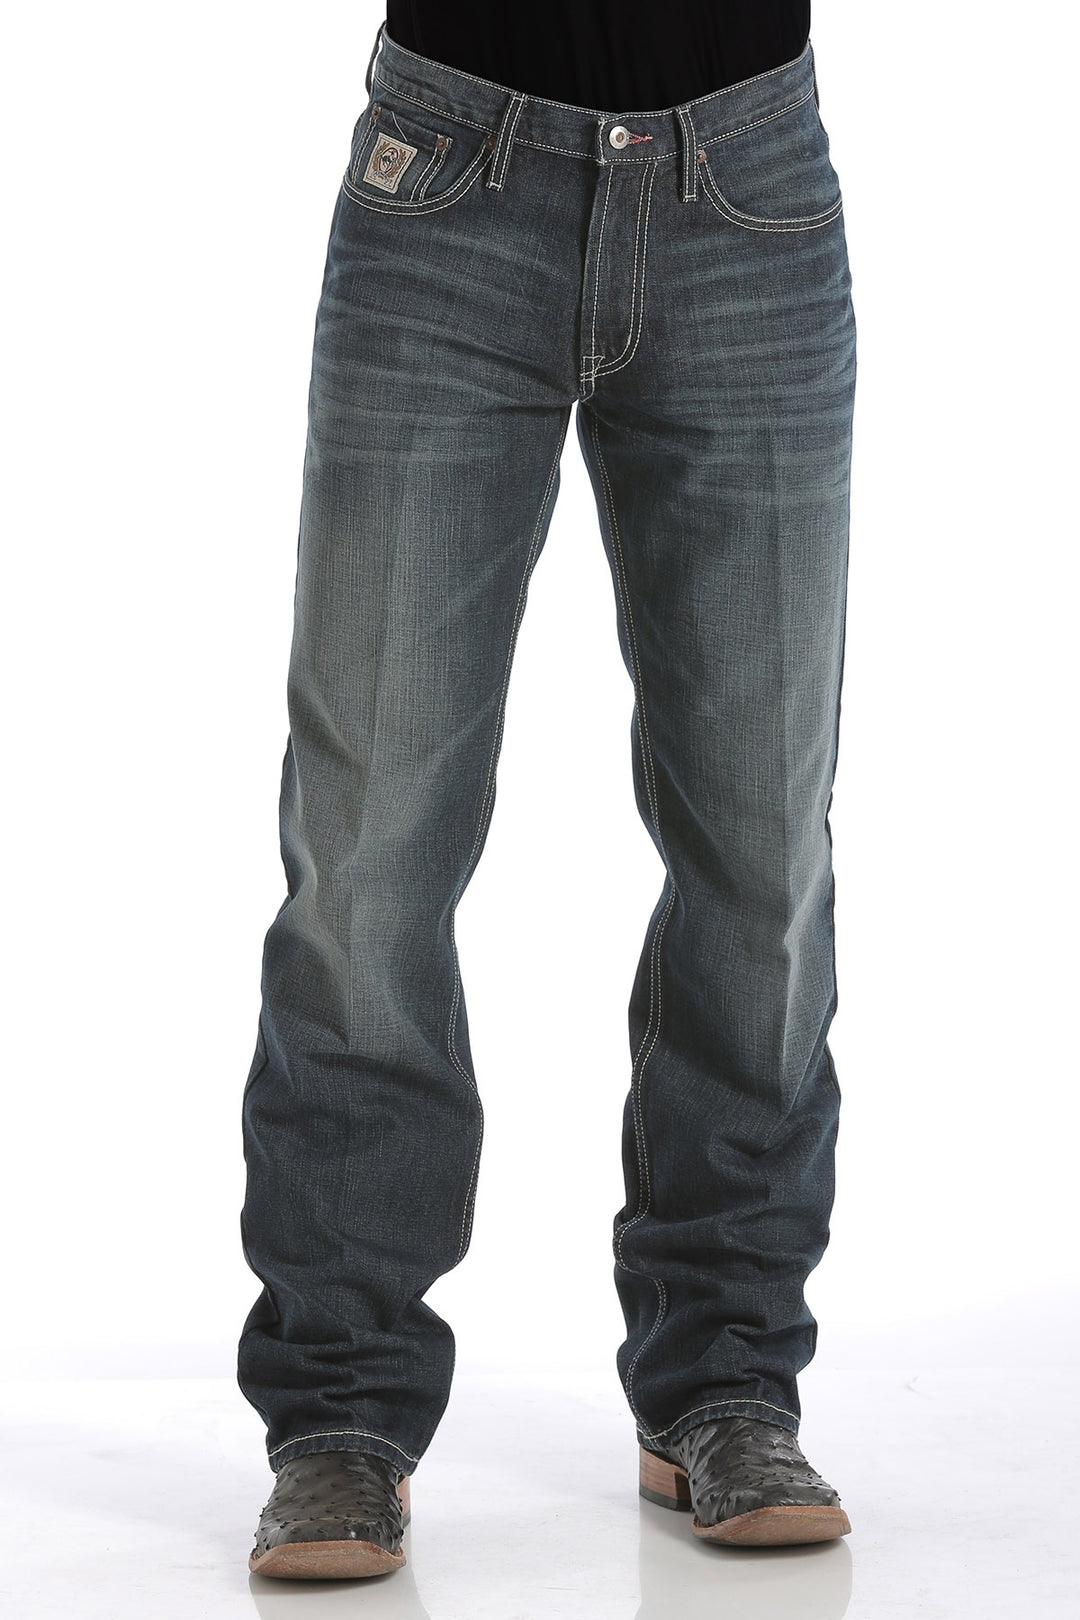 CINCH Jeans  Men's Herringbone Western Snap Shirt - Black